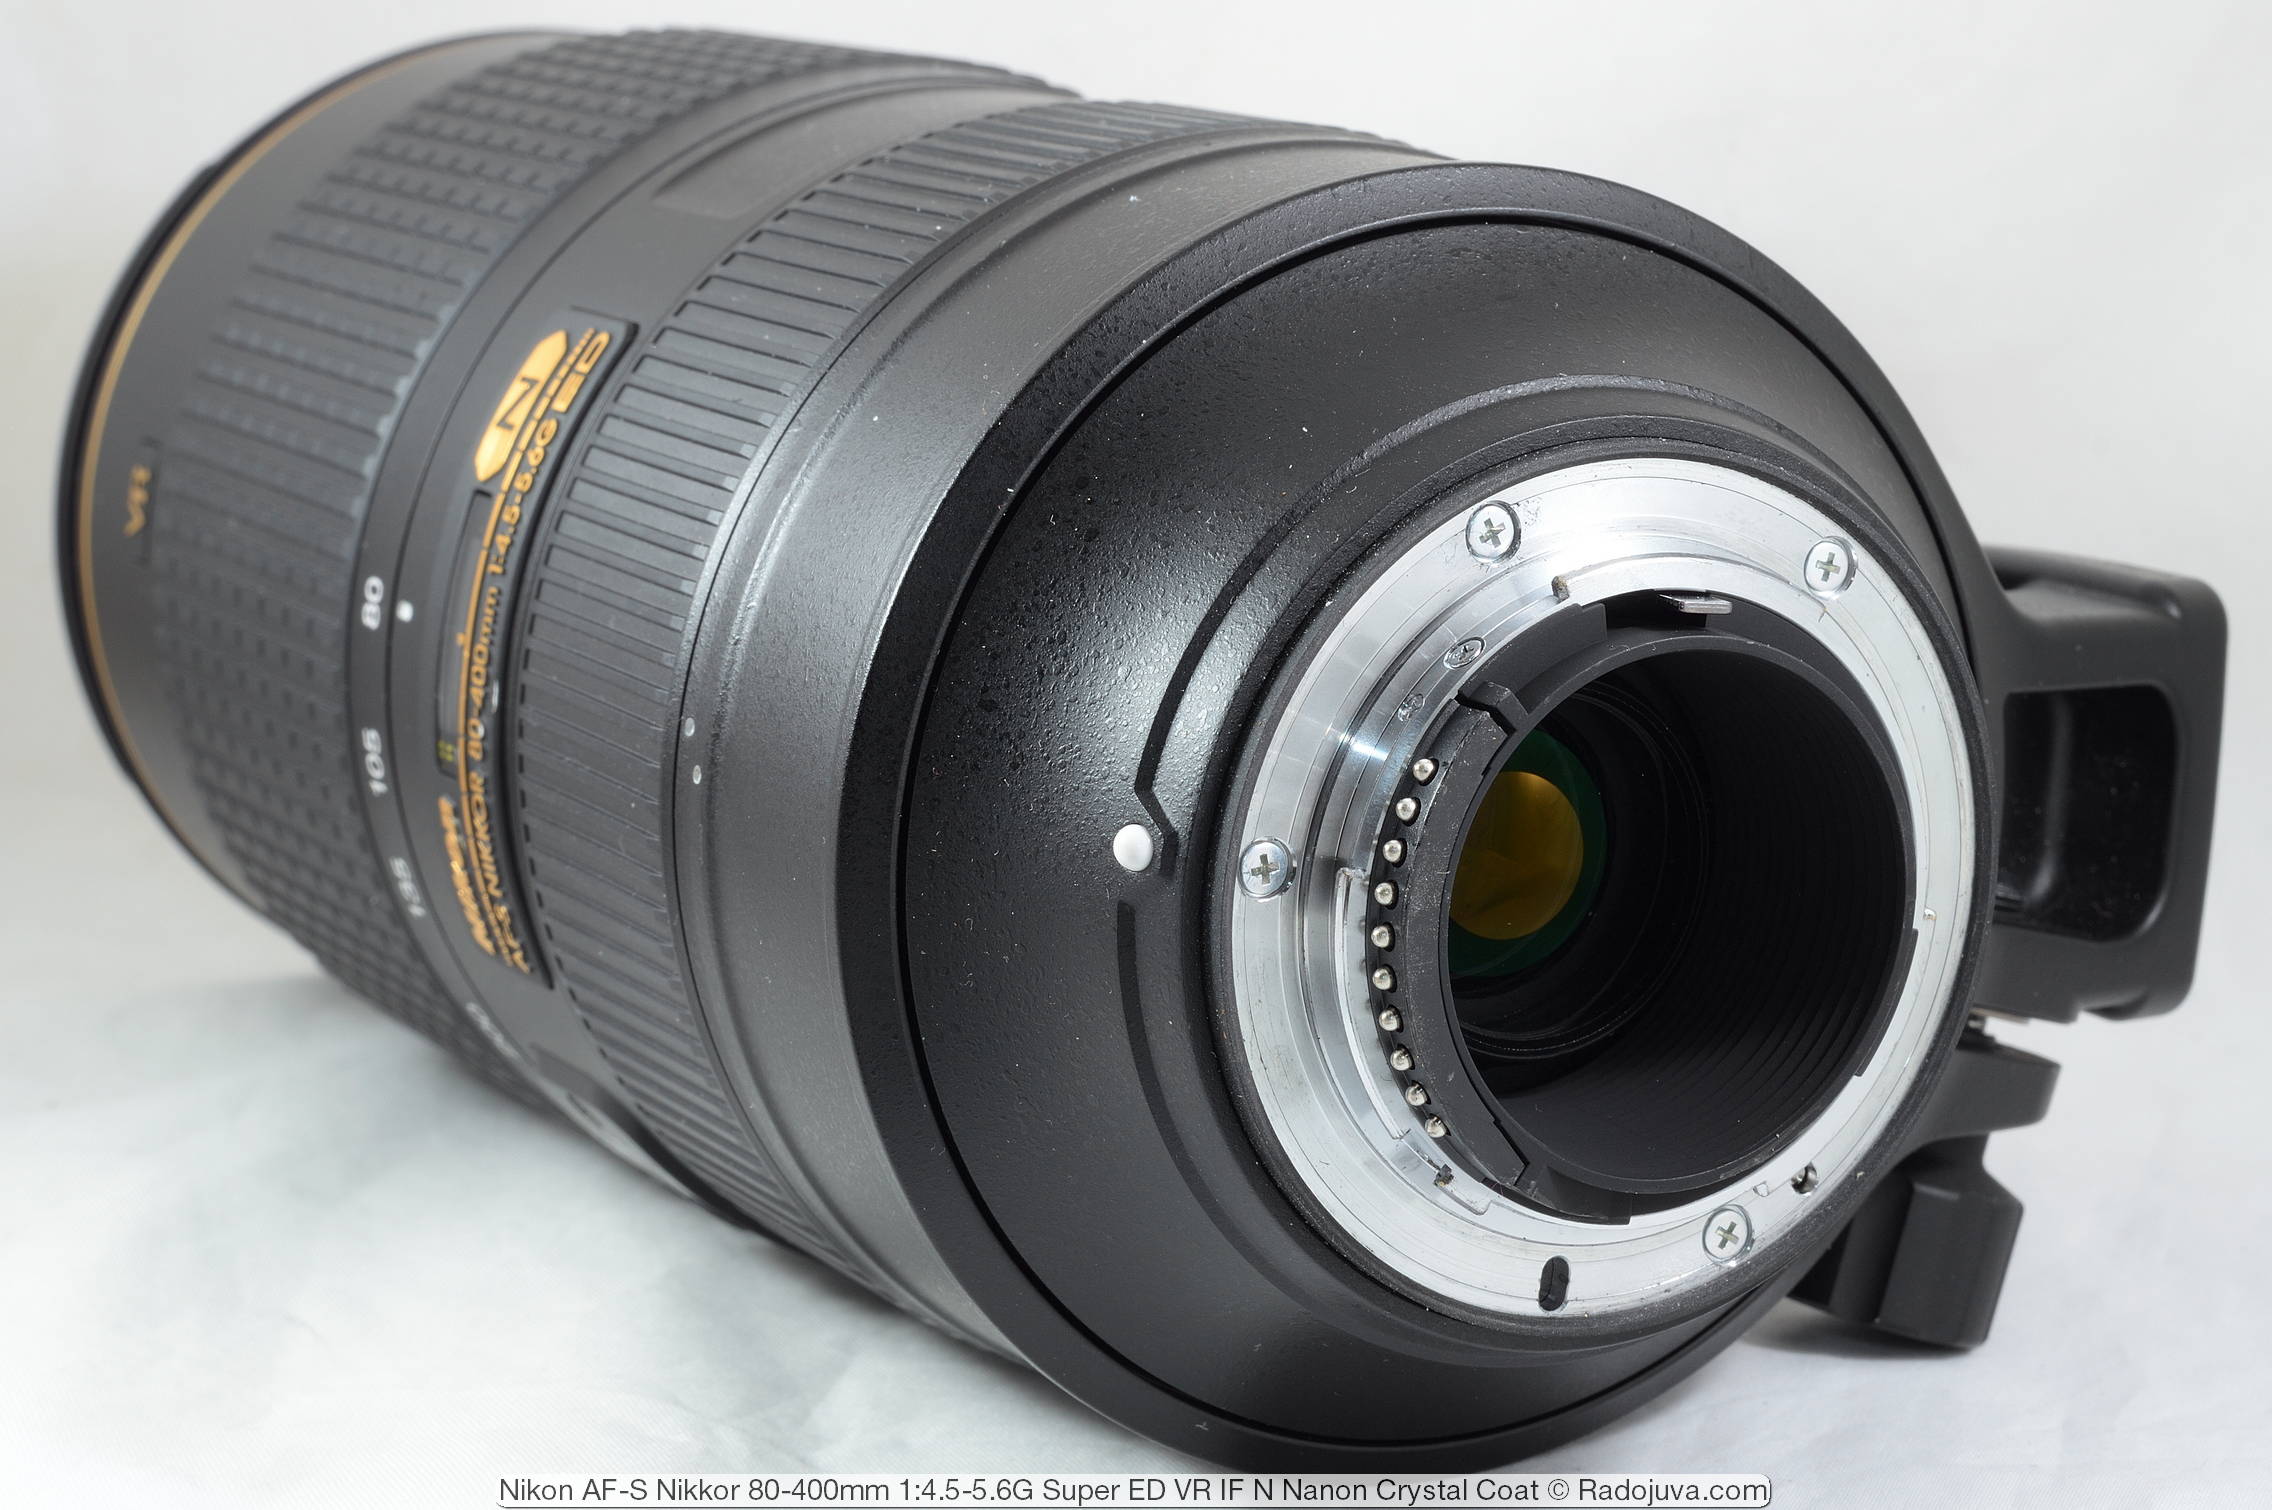 Nikon AF-S Nikkor 80-400mm 1: 4.5-5.6G Super ED VR IF N Nano Crystal Coat